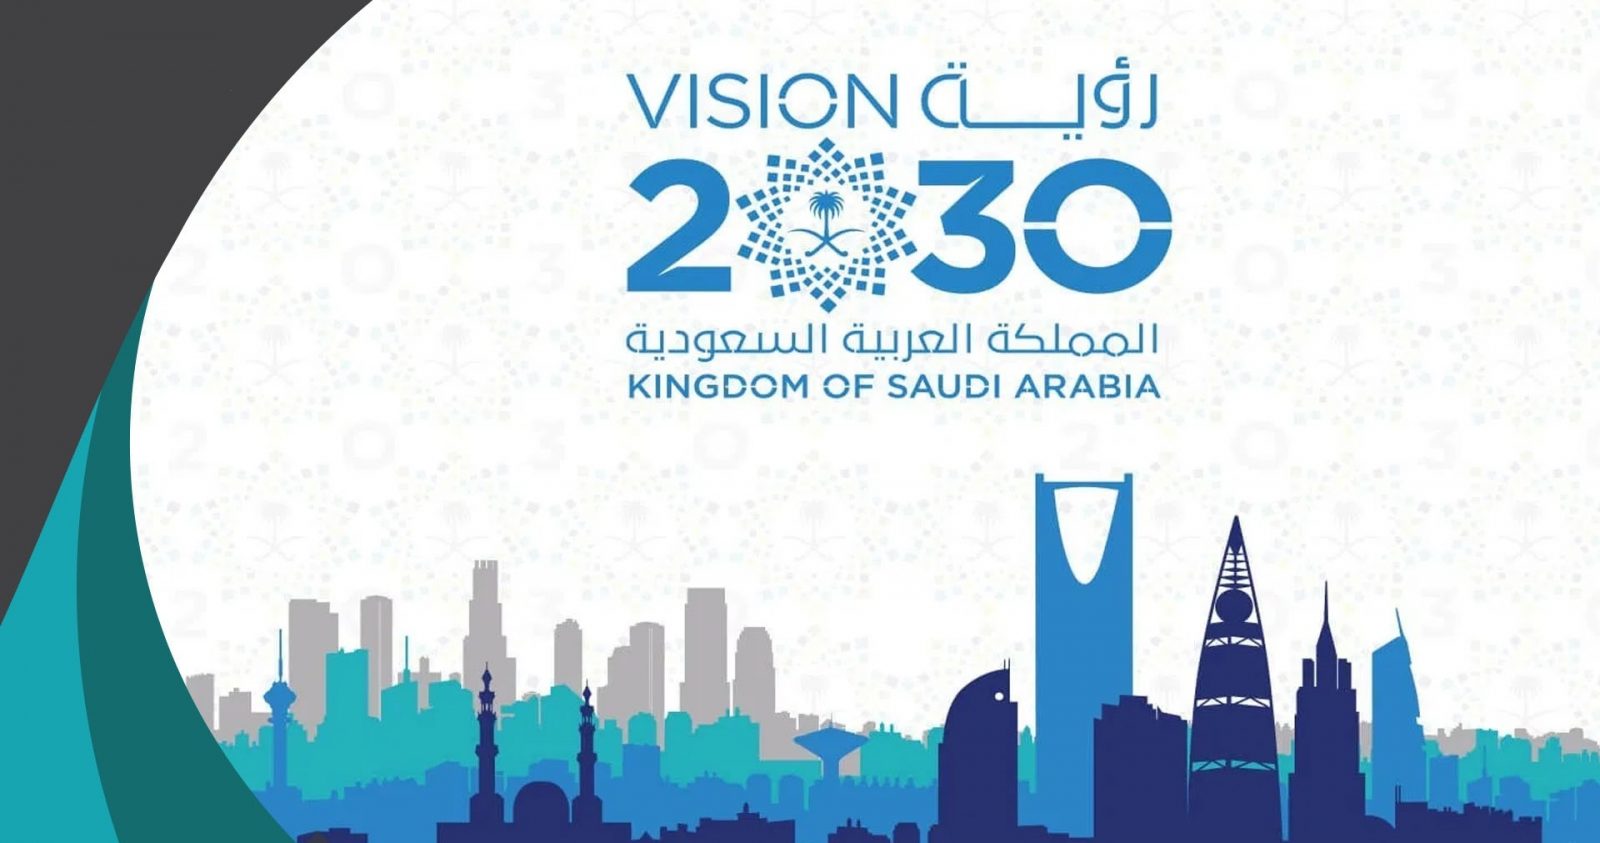 افضل ما قيل في رؤية 2030 المملكة العربية السعودية